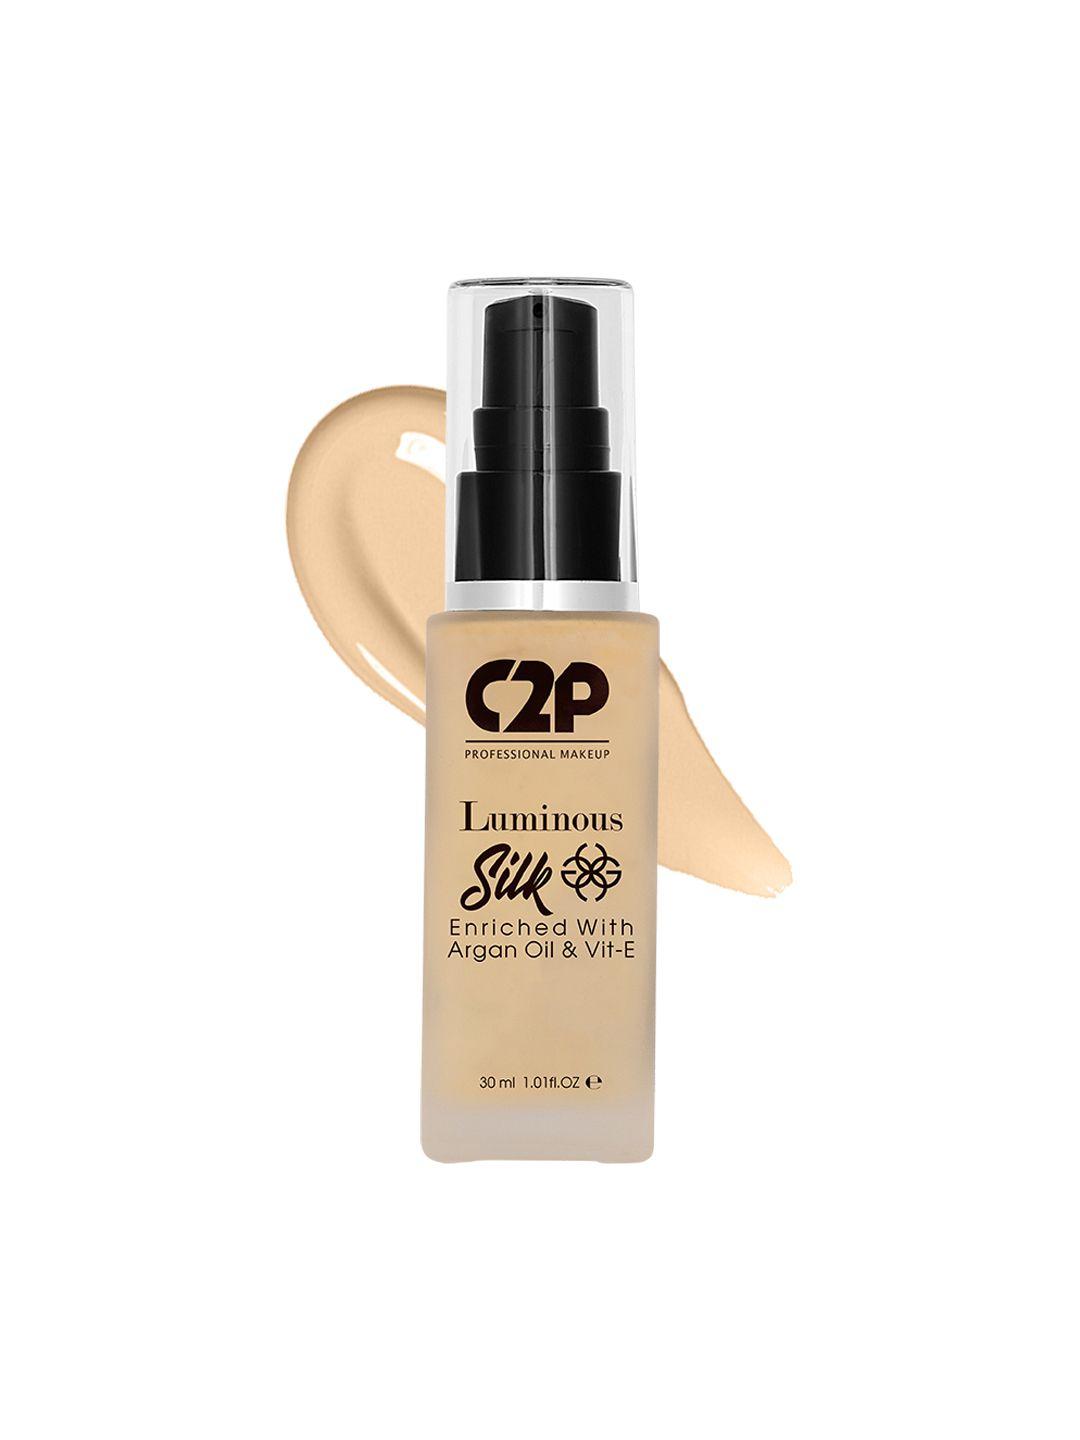 c2p professional makeup luminous silk liquid foundation with argan oil - fair 01